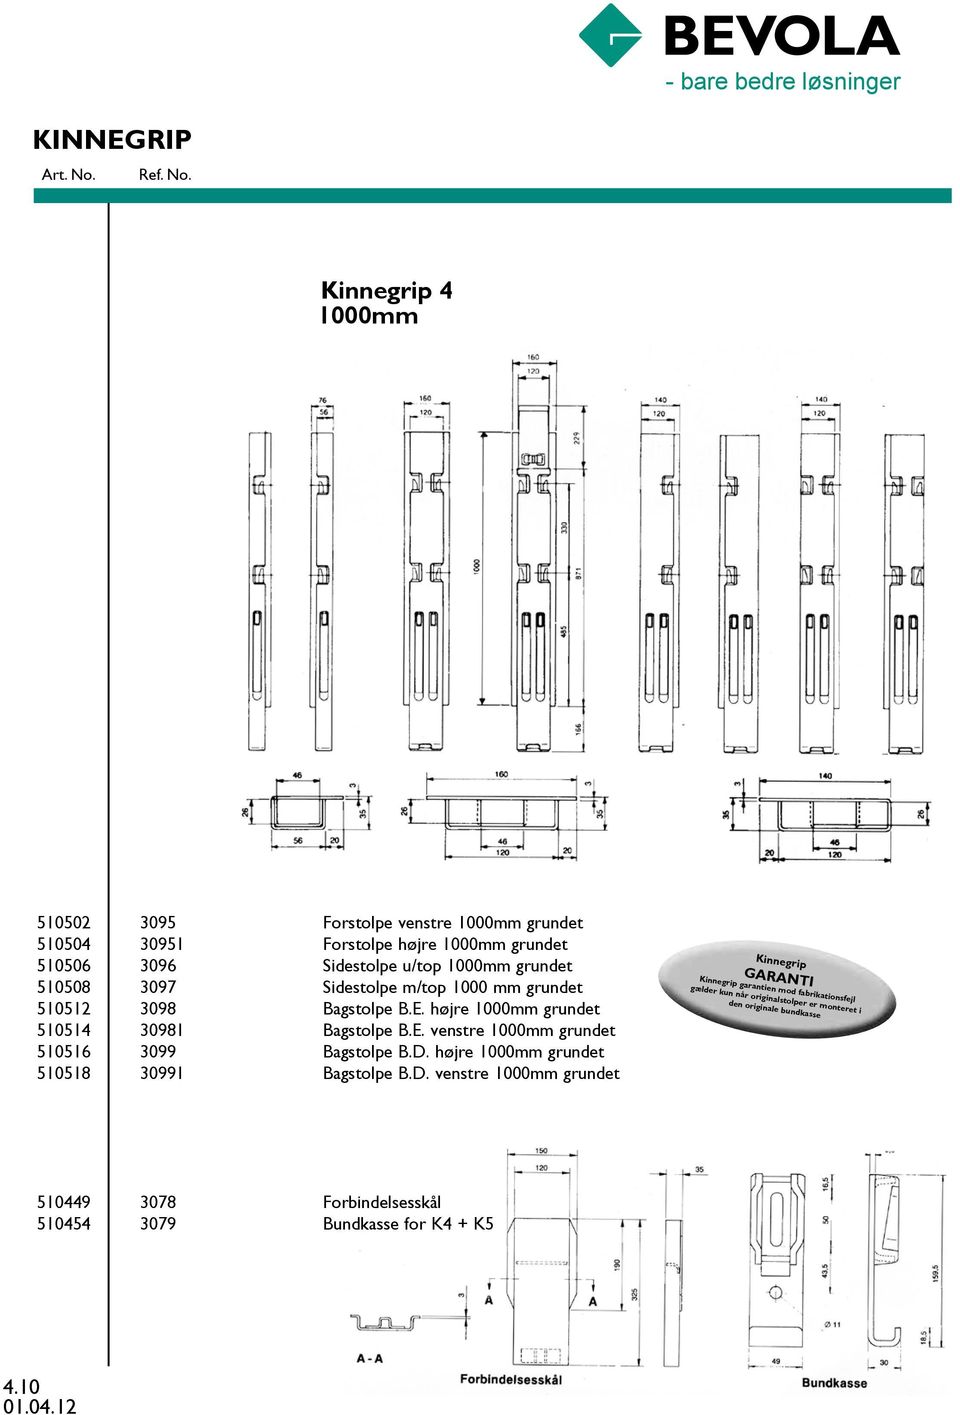 D. højre 1000mm grundet 510518 30991 Bagstolpe B.D. venstre 1000mm grundet Kinnegrip GARANTI Kinnegrip garantien mod fabrikationsfejl gælder kun når